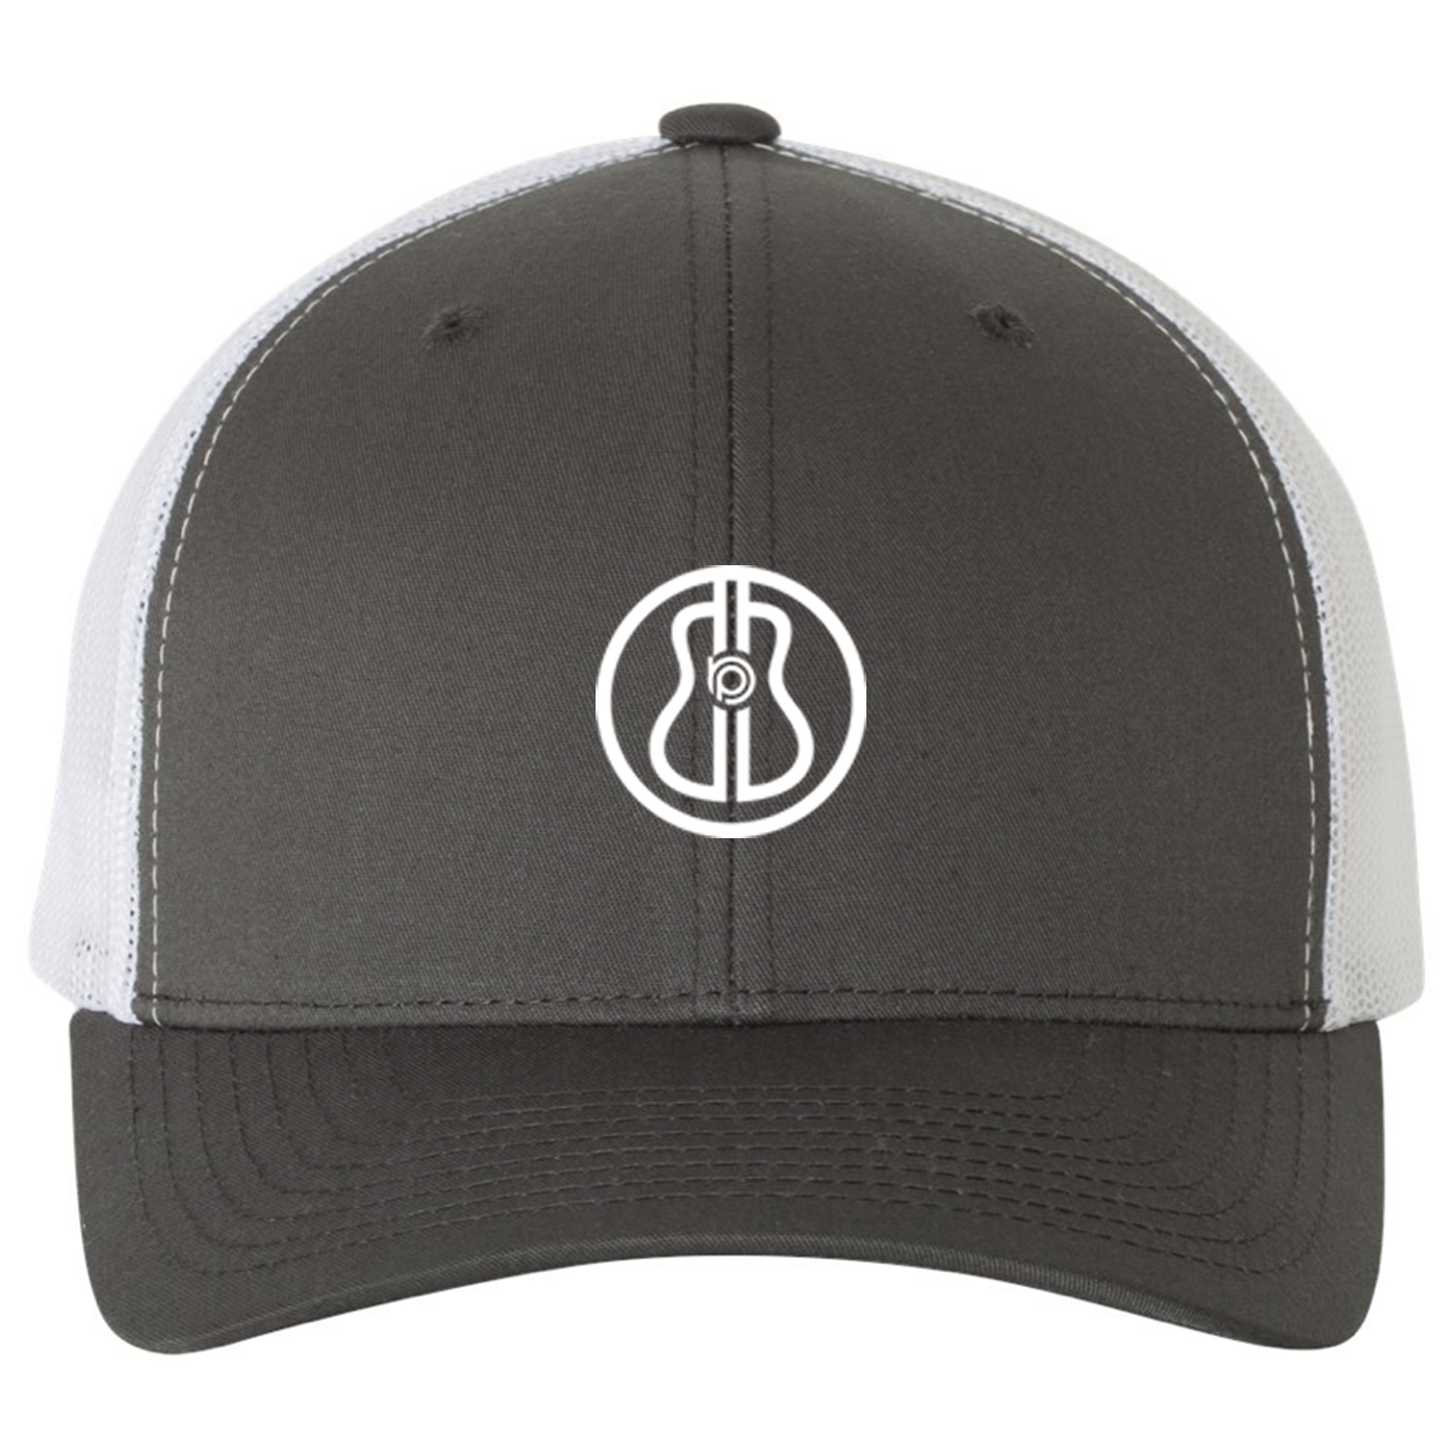 BP Structured Trucker Hat